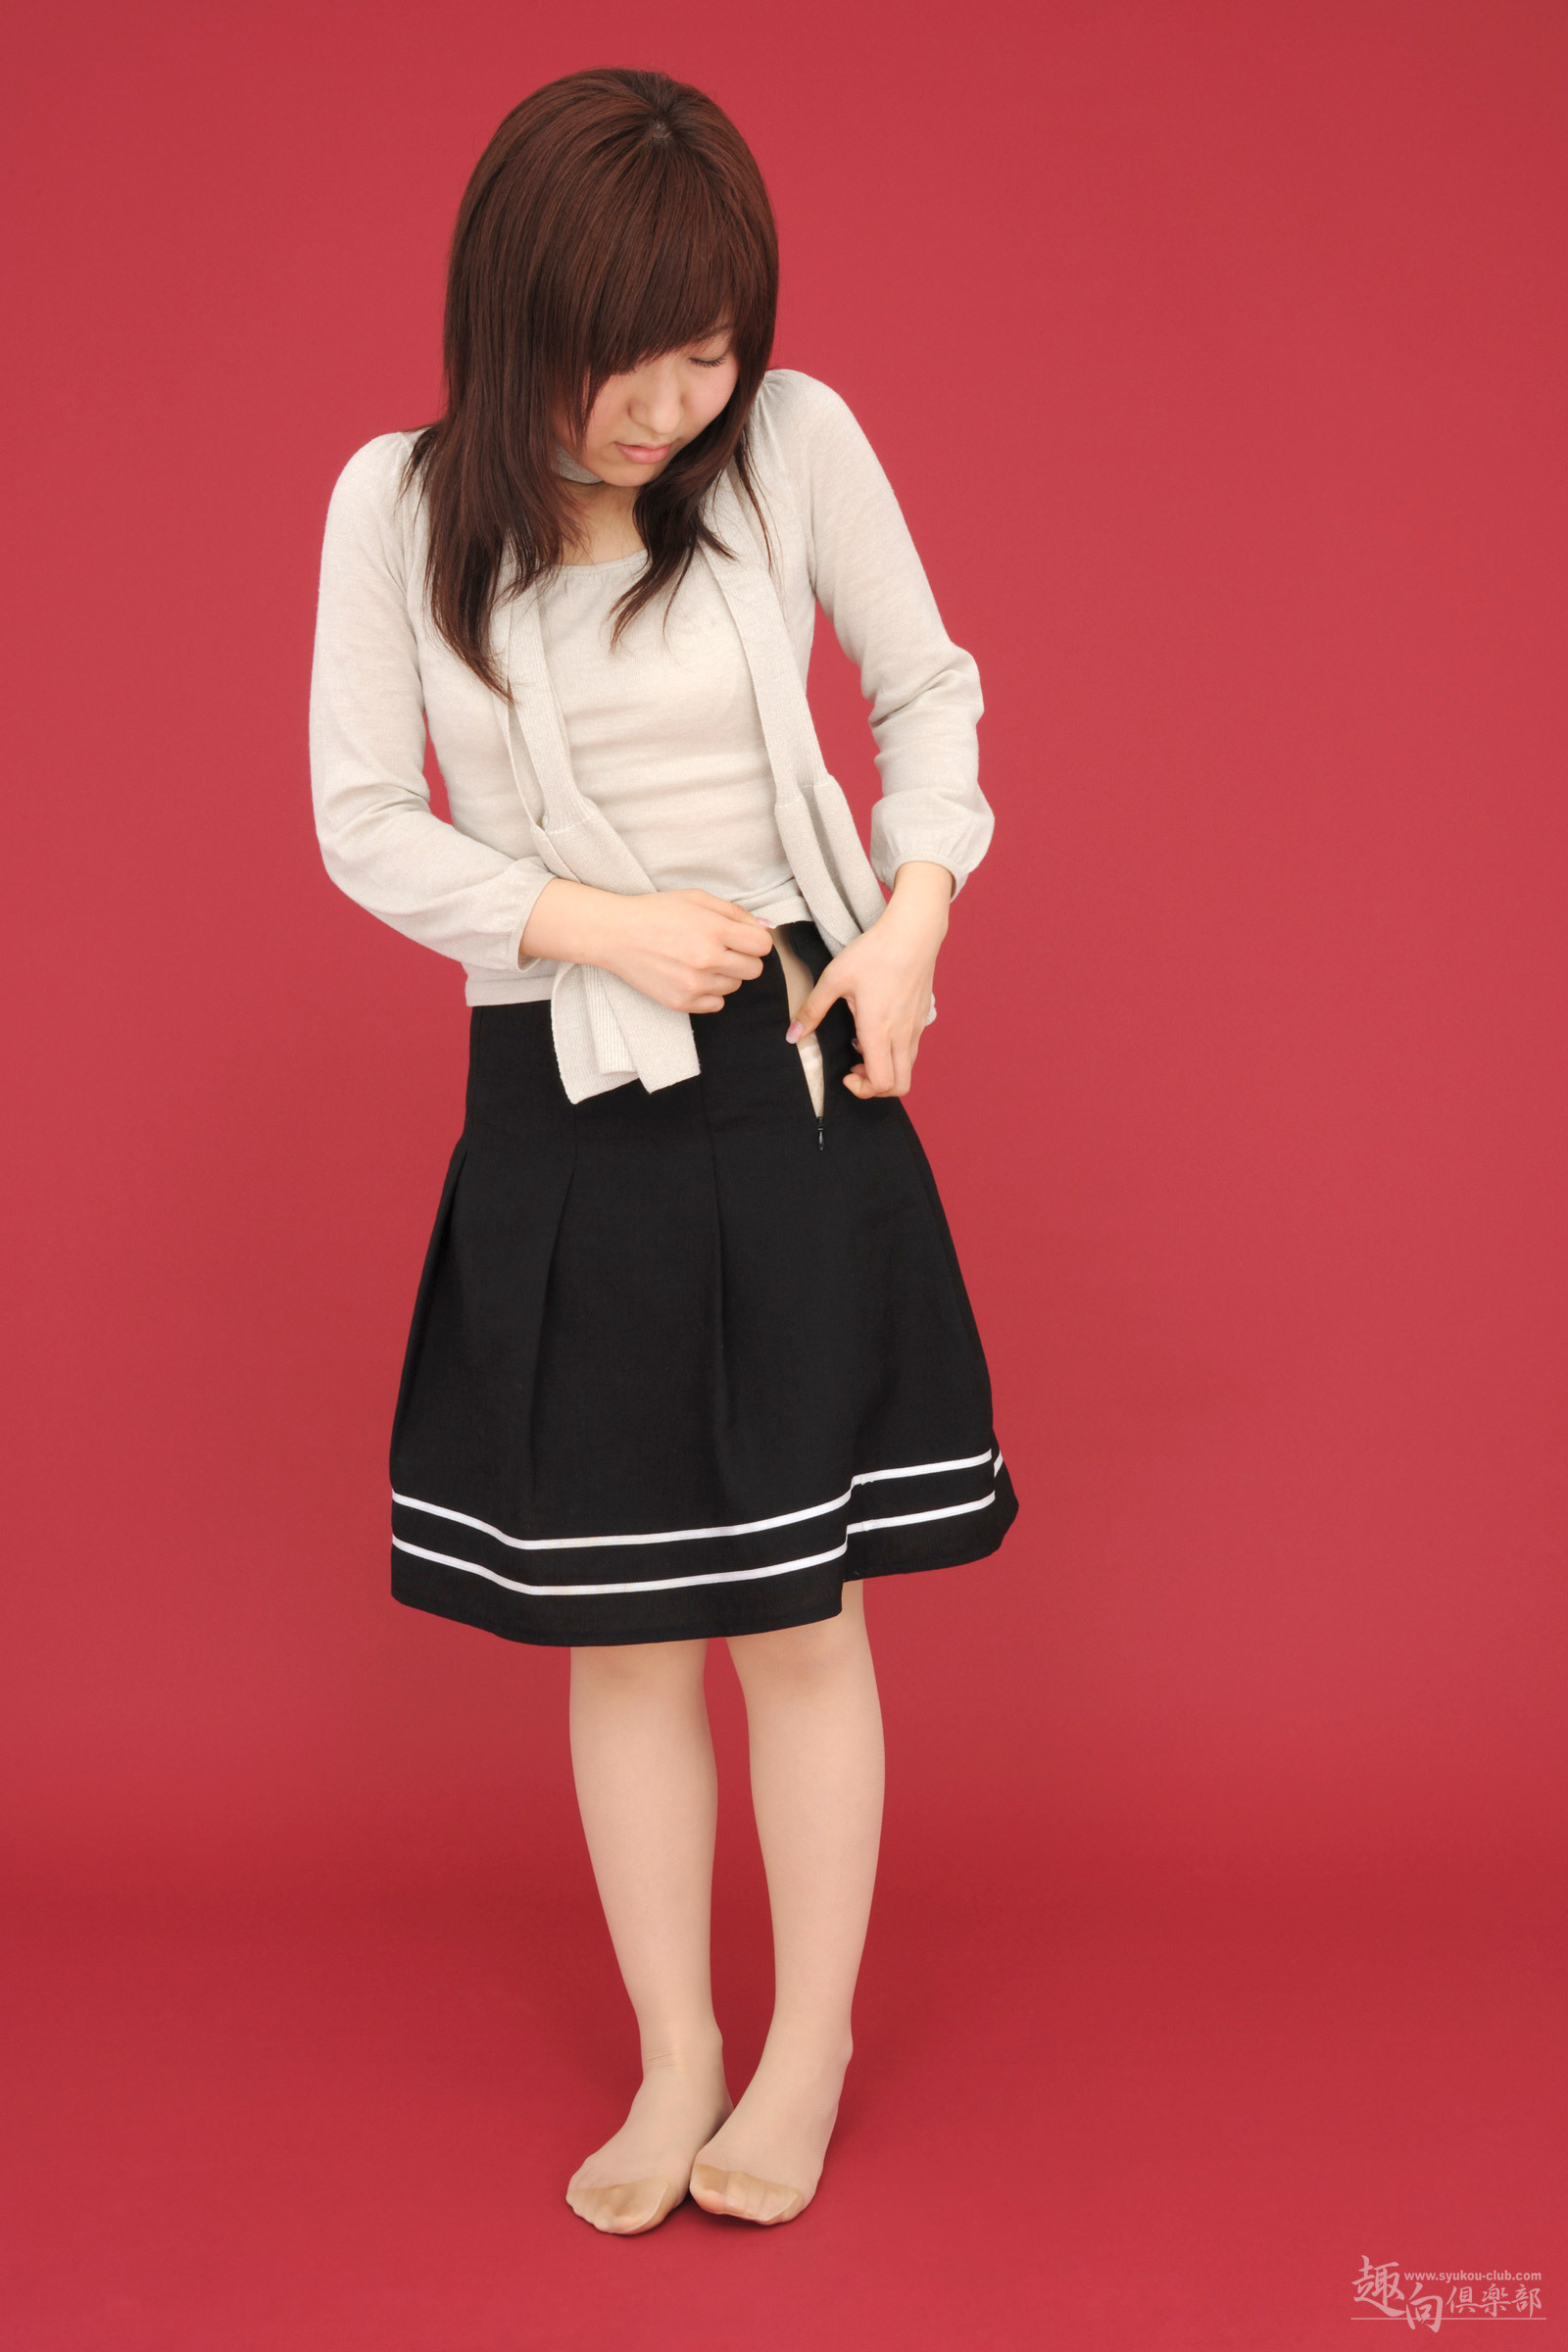 [syukou club] 2013.04.25 digi girl No.124 new secretary 1